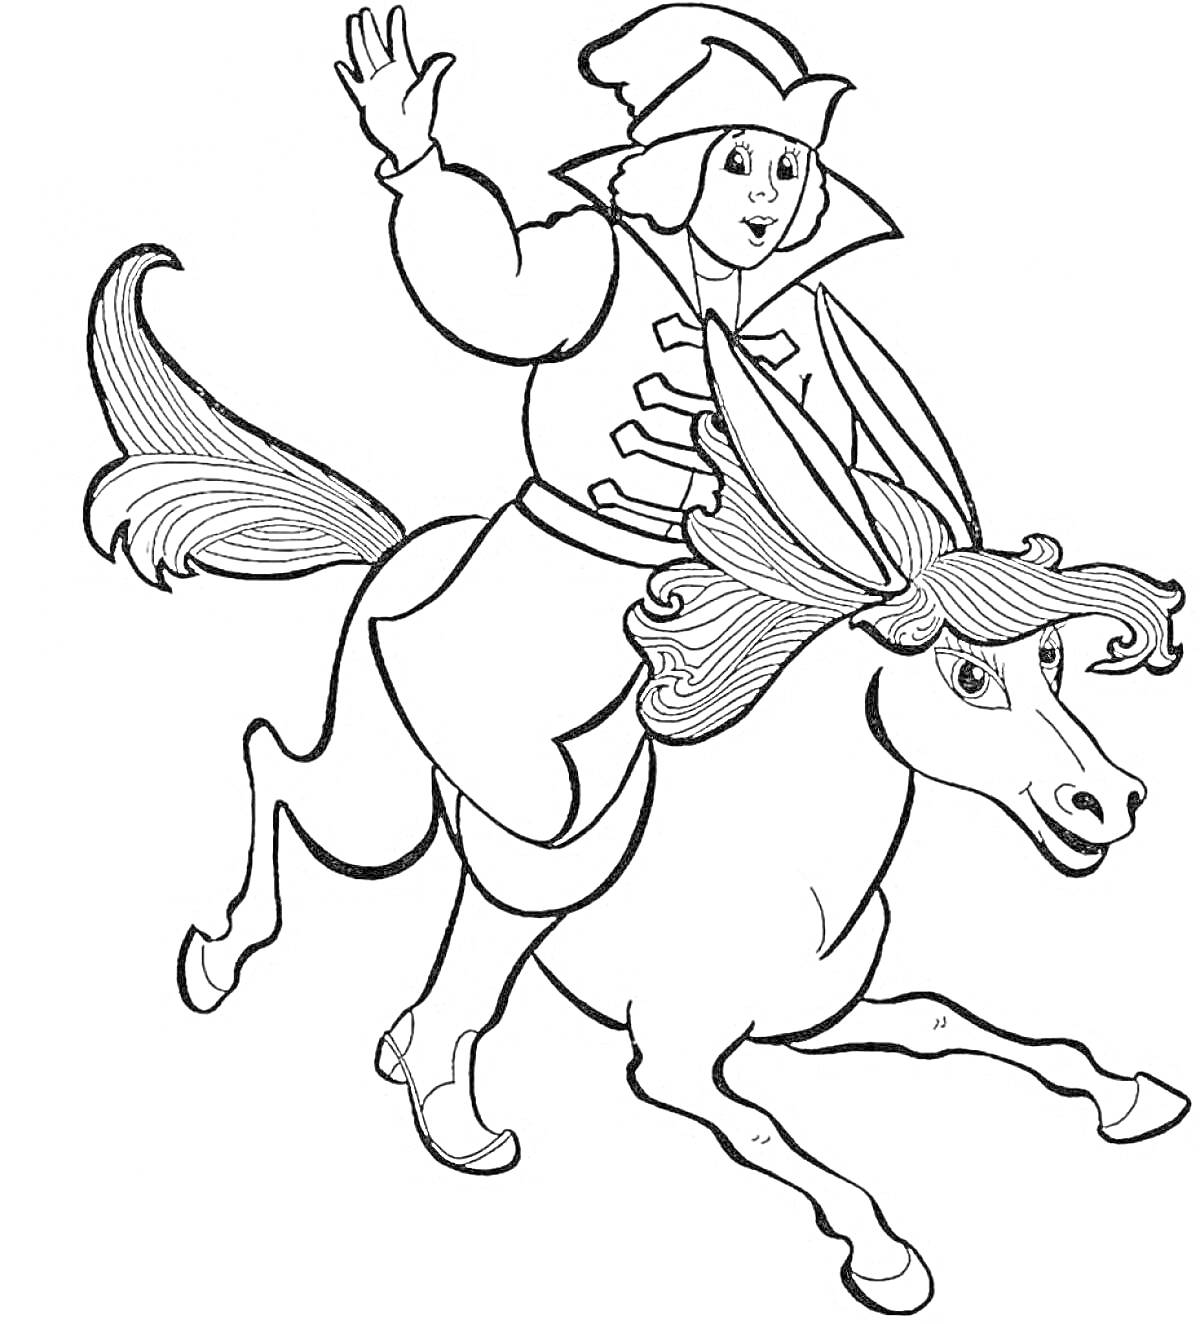 Молодой человек на коньке-горбунке, который держит руку поднятой вверх